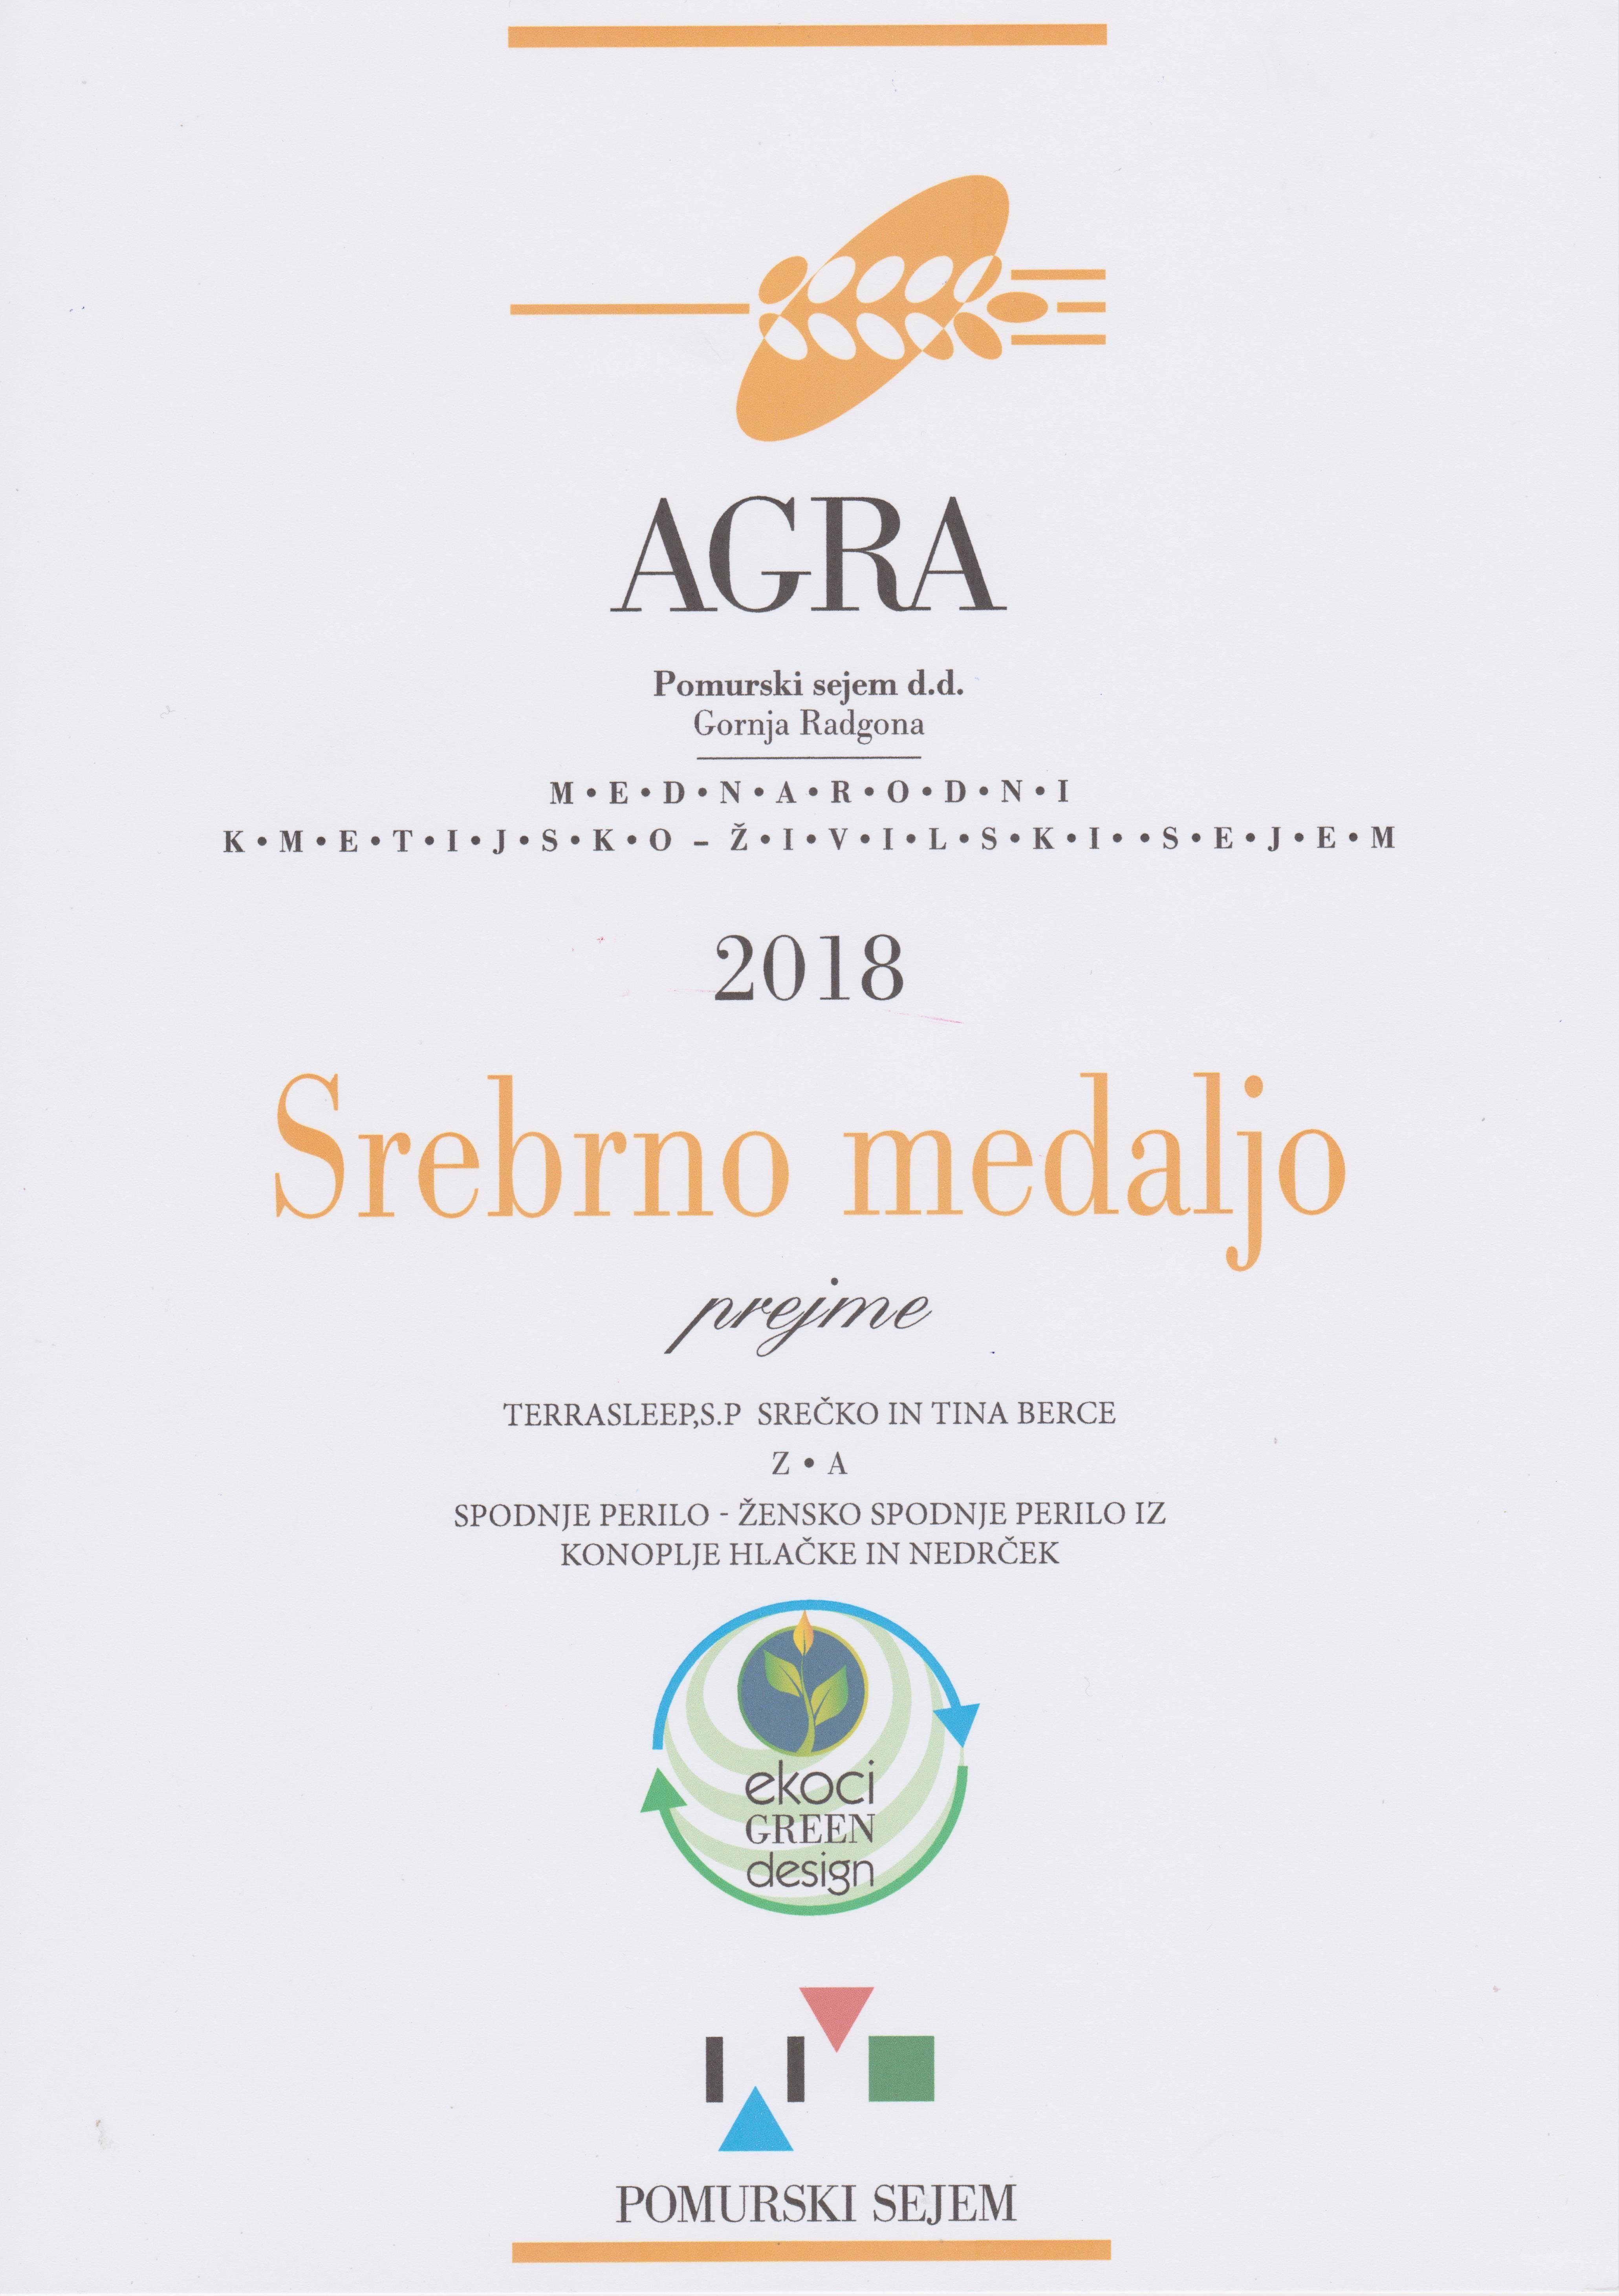 Srebrna medalja AGRA 2018 - konopljino spodnje perilo